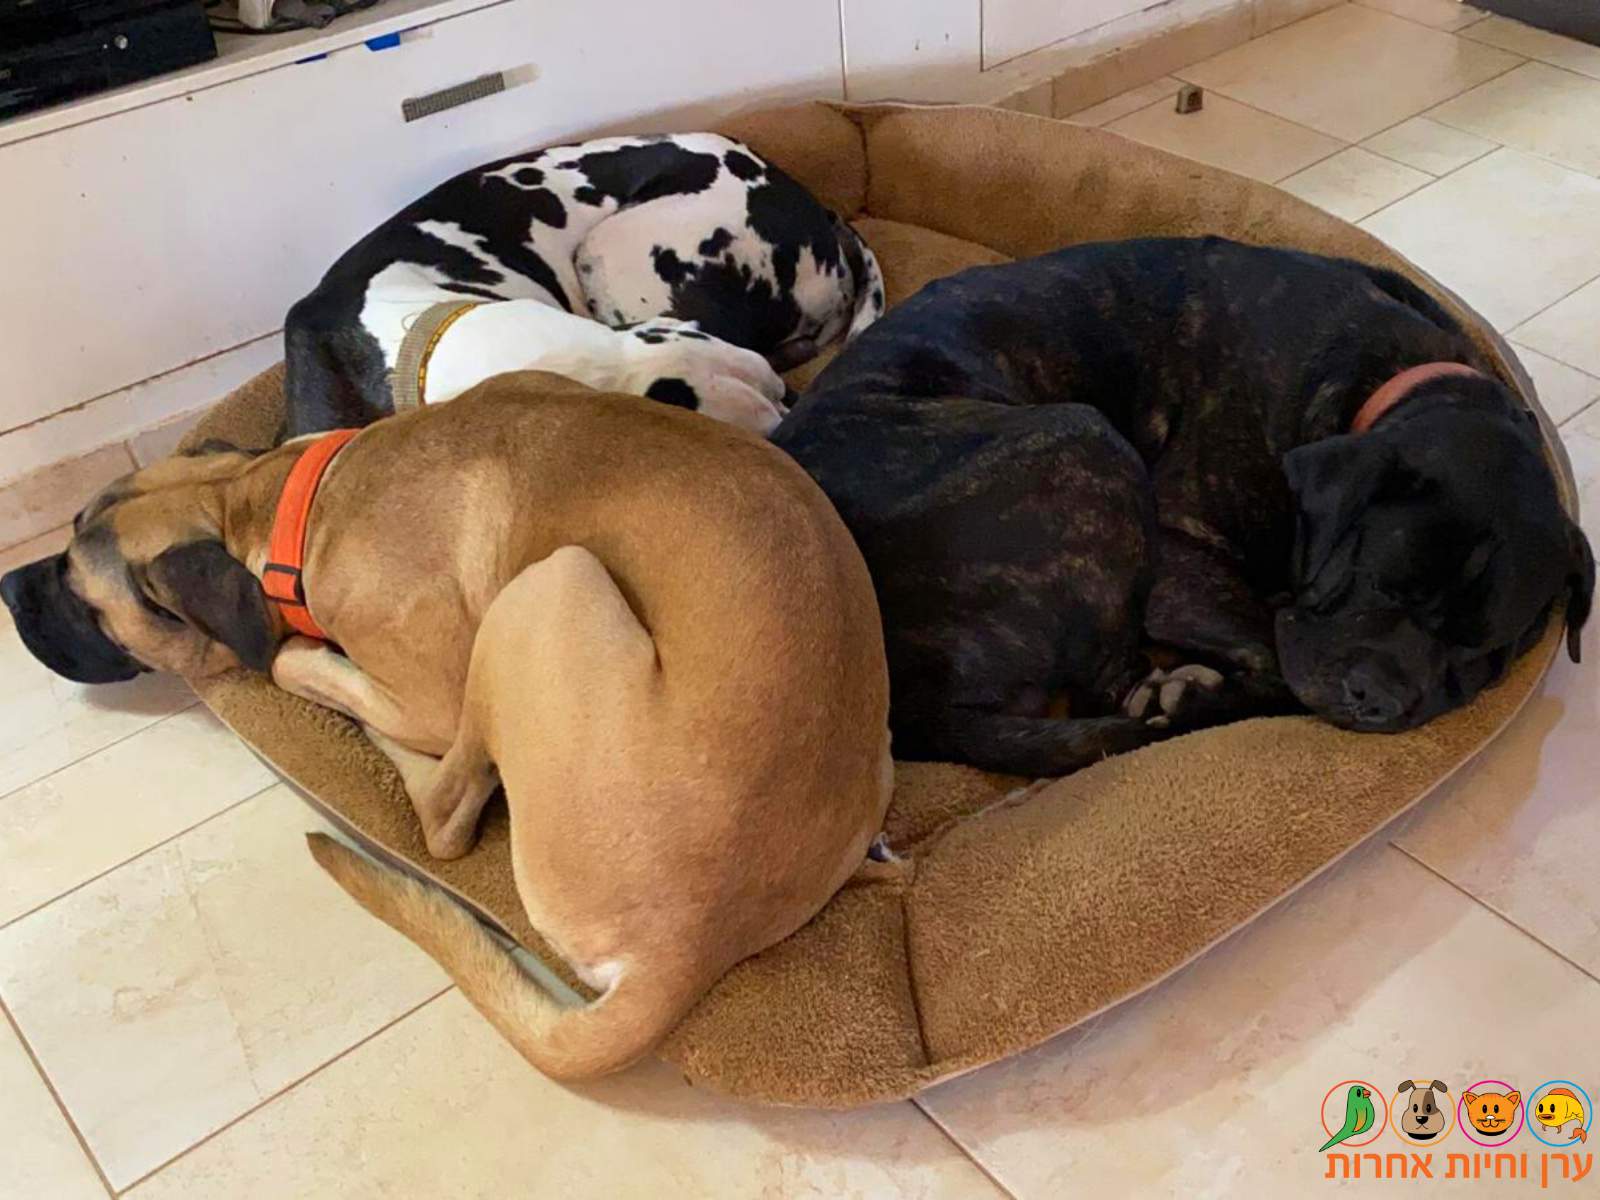 כלבים מגזע גדול ישנים ביחד על מיטת כלבים ענקית